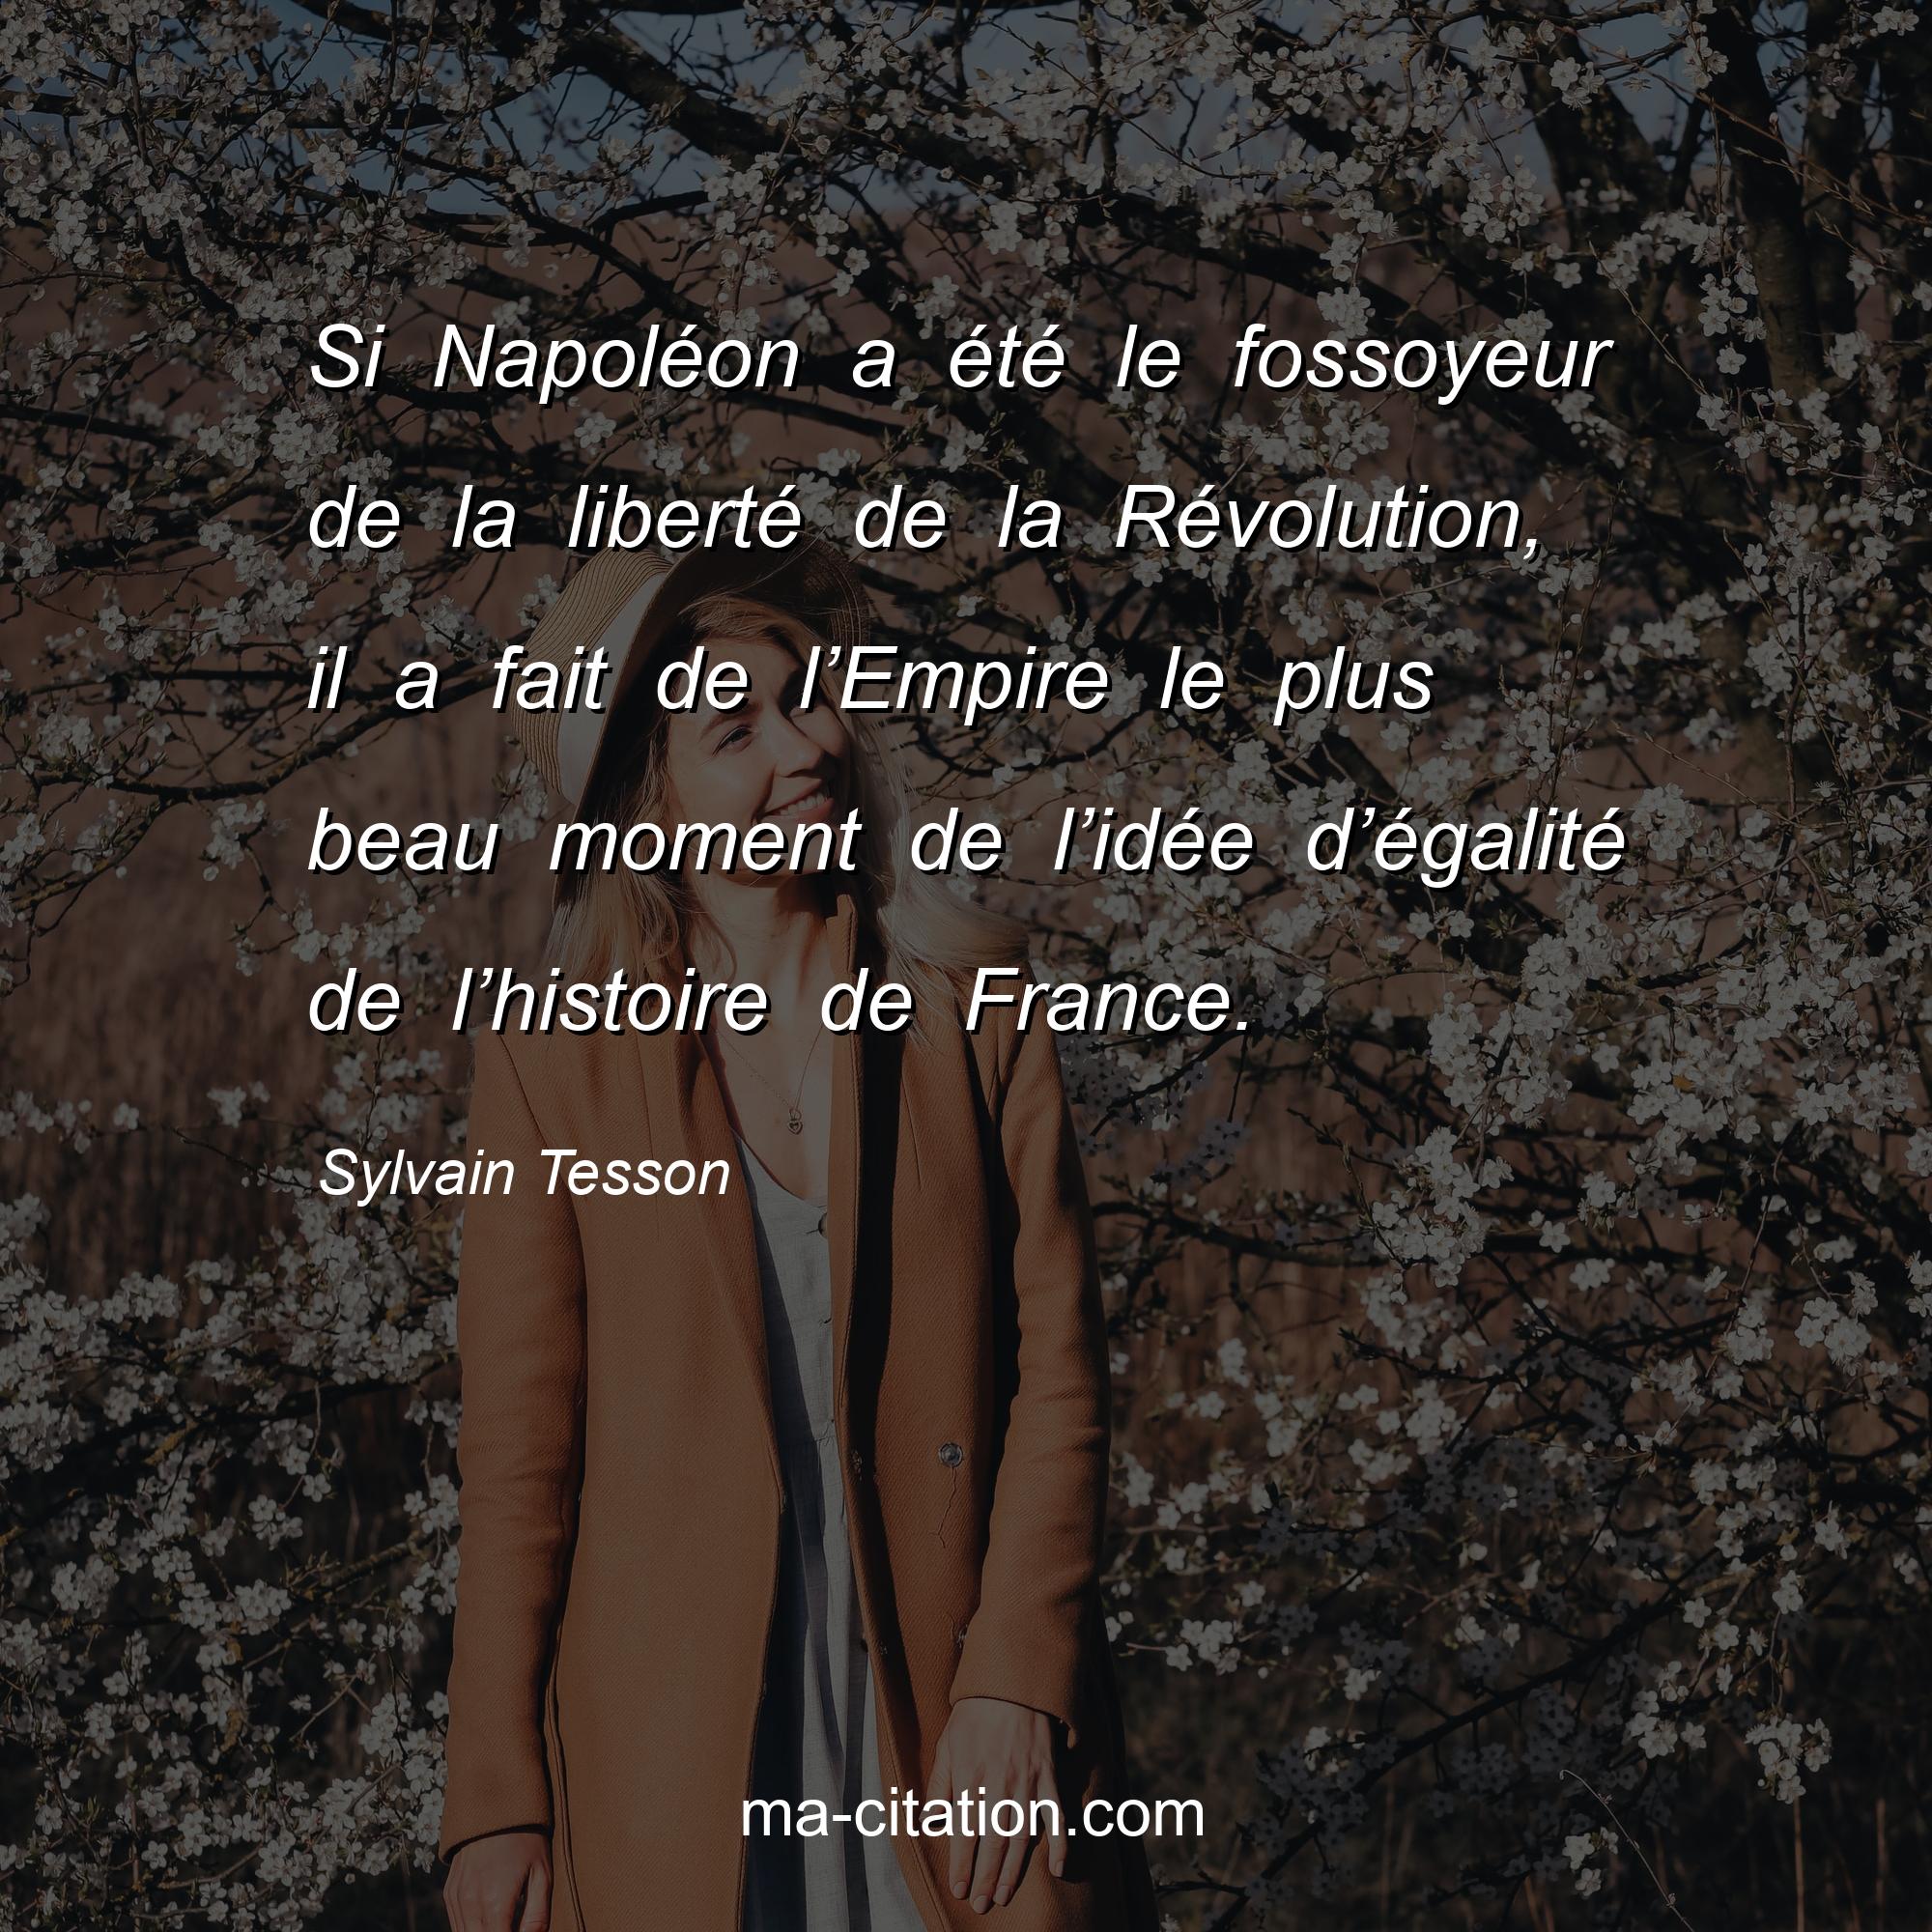 Sylvain Tesson : Si Napoléon a été le fossoyeur de la liberté de la Révolution, il a fait de l’Empire le plus beau moment de l’idée d’égalité de l’histoire de France.